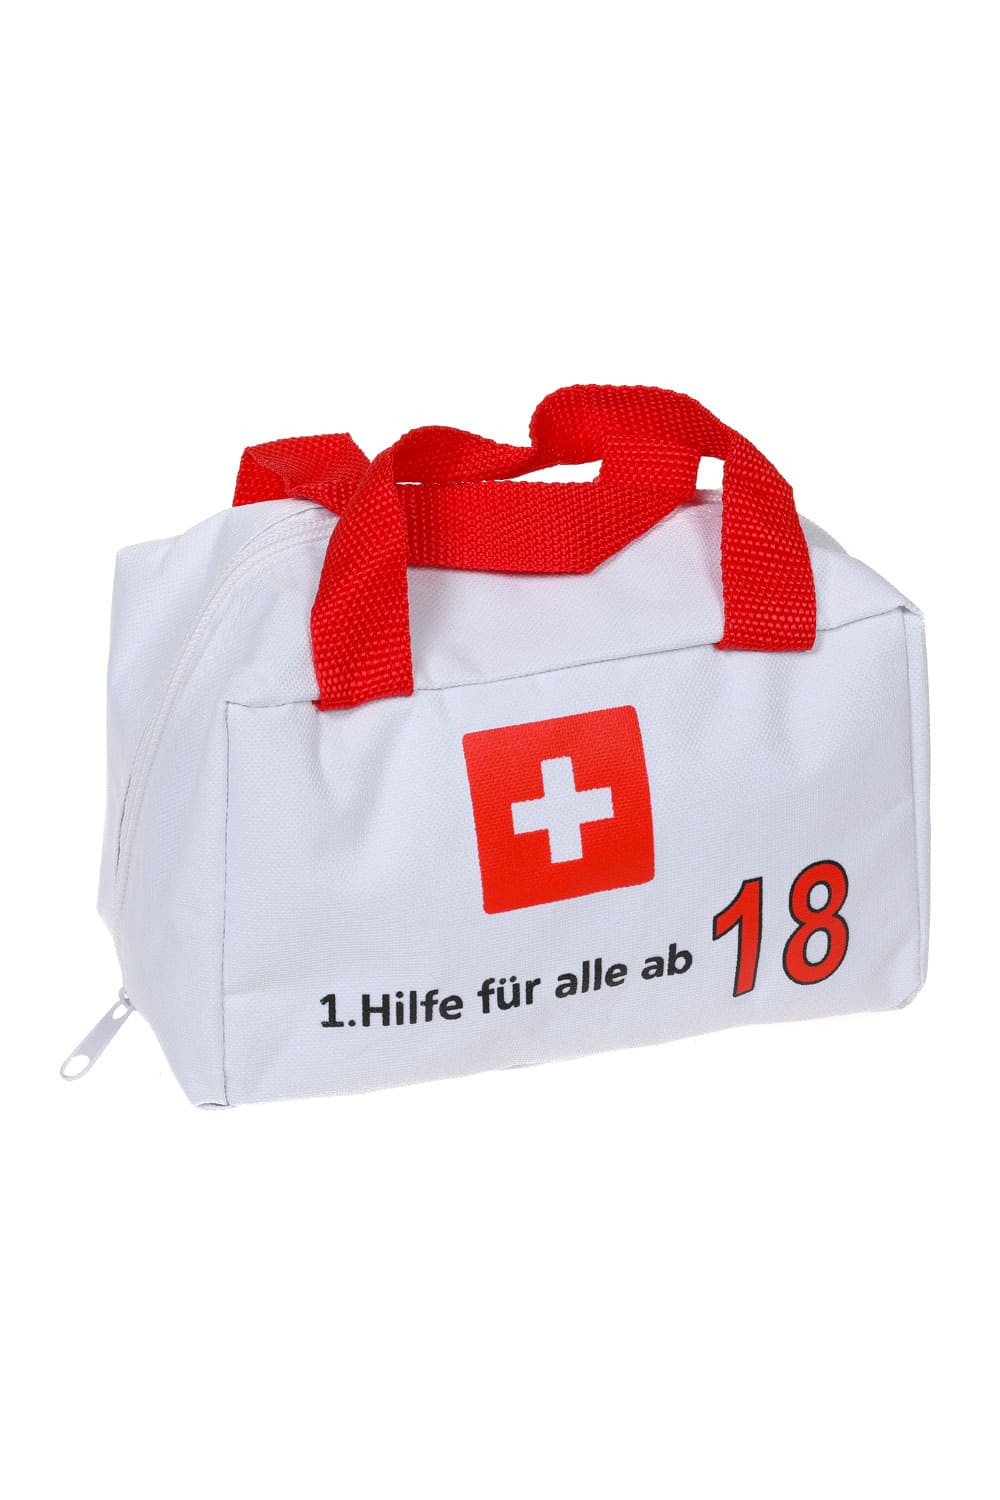 http://geschenkinsel.ch/cdn/shop/products/Erste-Hilfe-Tasche-18.Geburtstag.jpg?v=1675460443